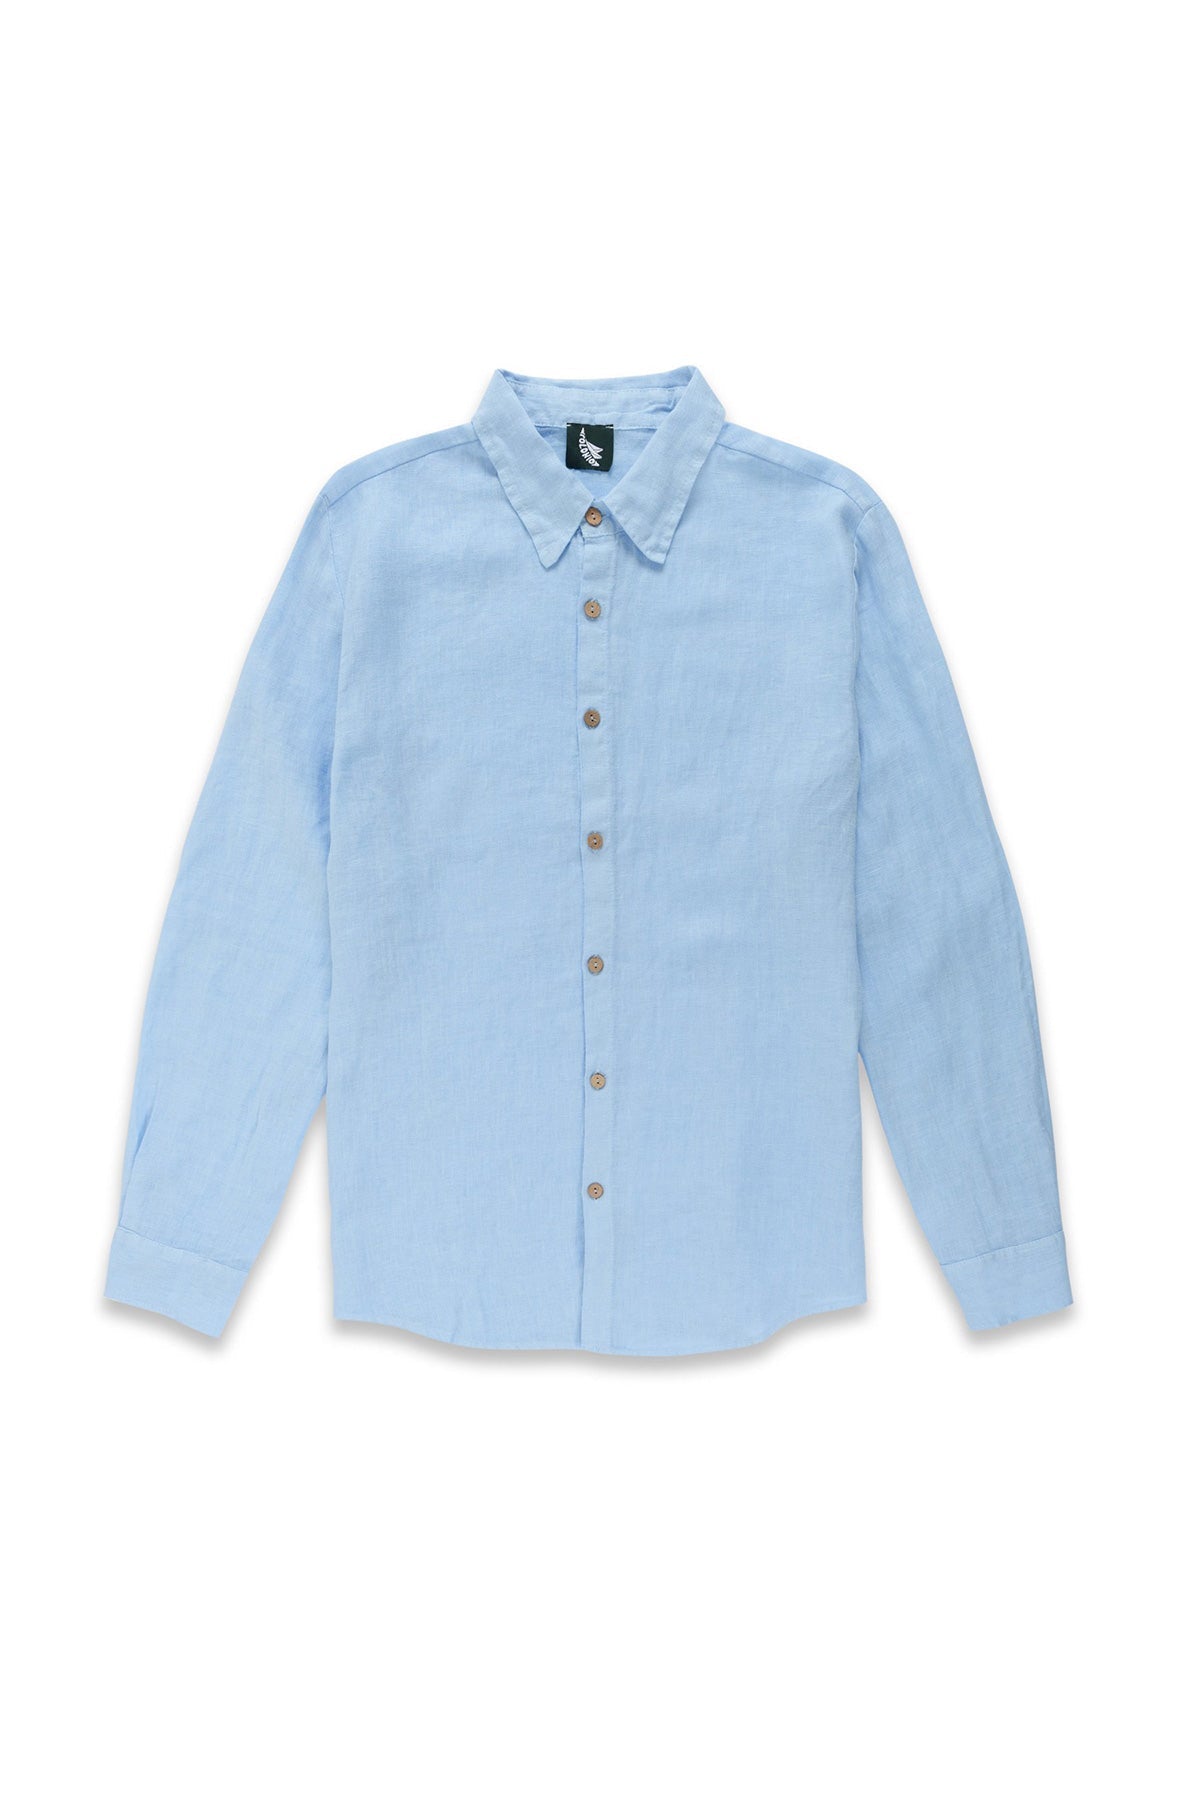 Sky Blue Linen Shirt - Polonio